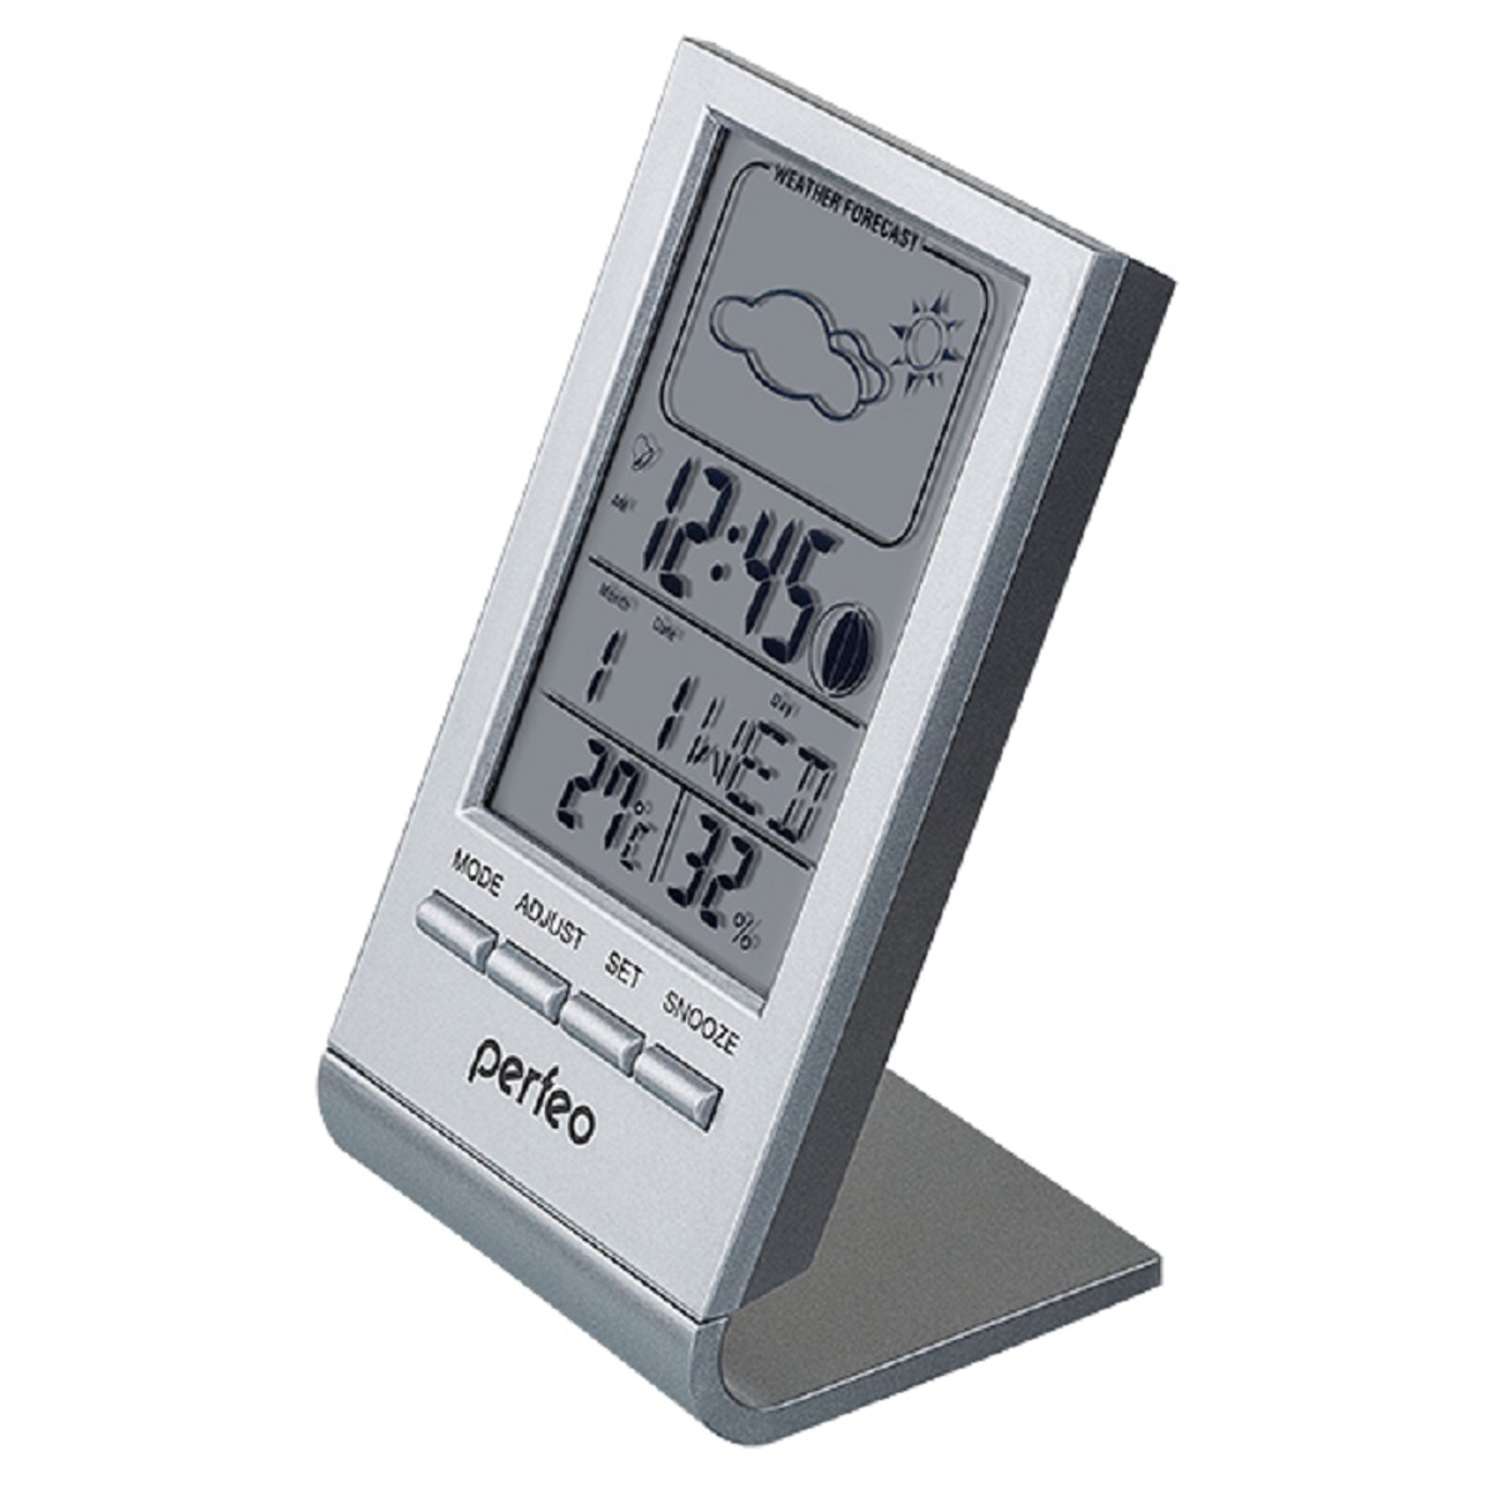 Часы-метеостанция Perfeo Angle серебряный PF-S2092 время температура влажность дата - фото 1